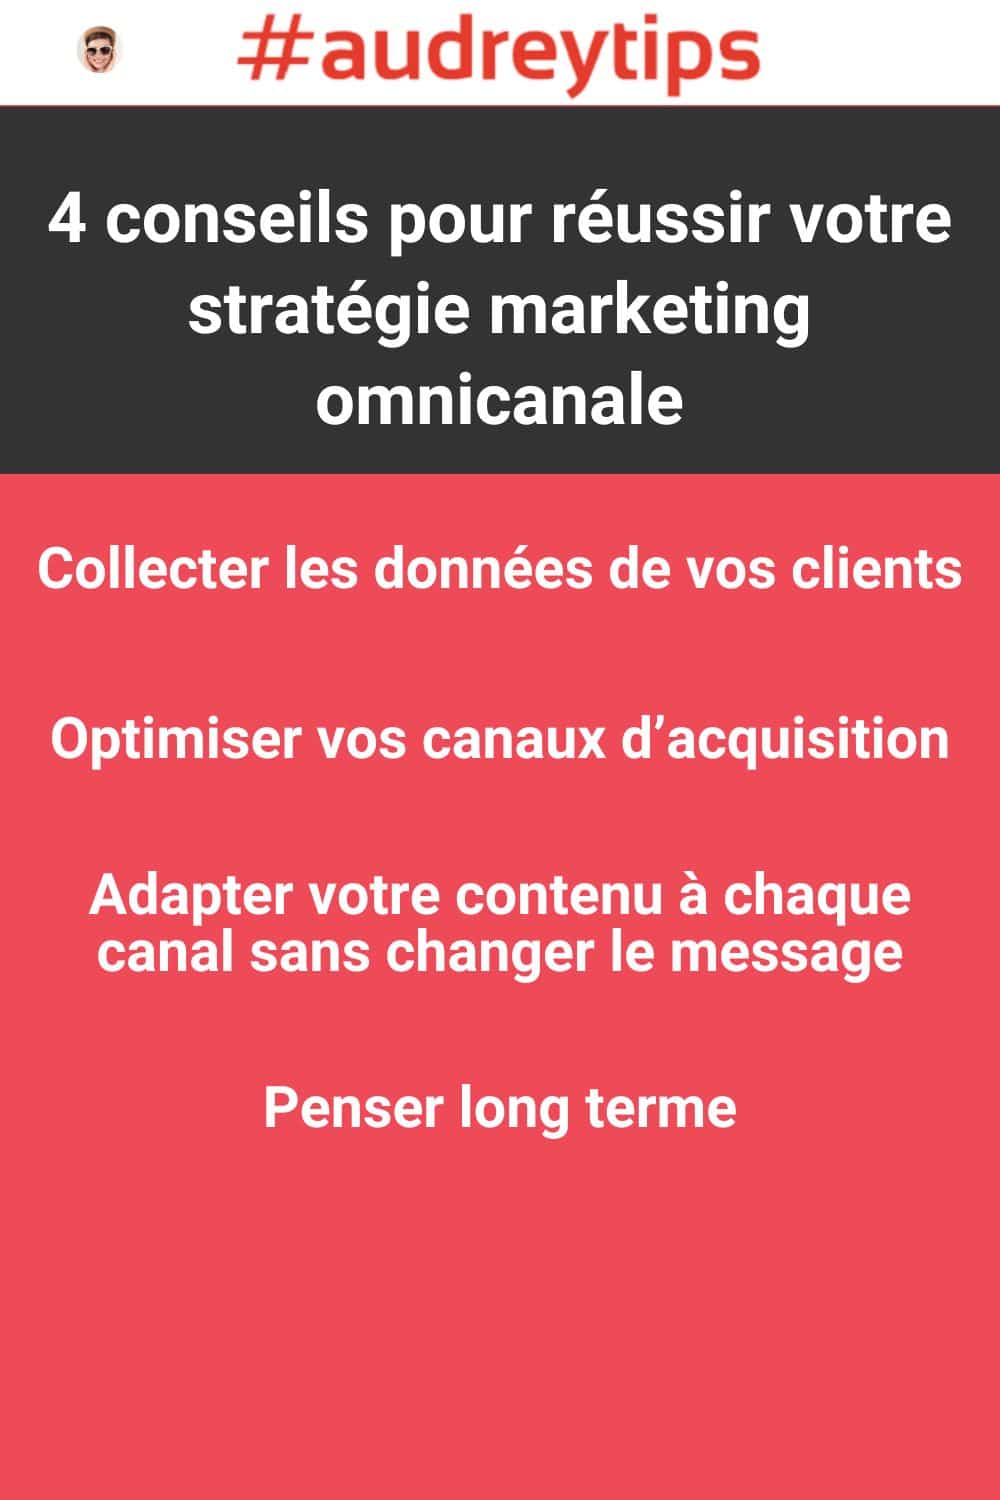 Infographie sur les 4 conseils pour réussir votre stratégie marketing omnicanal